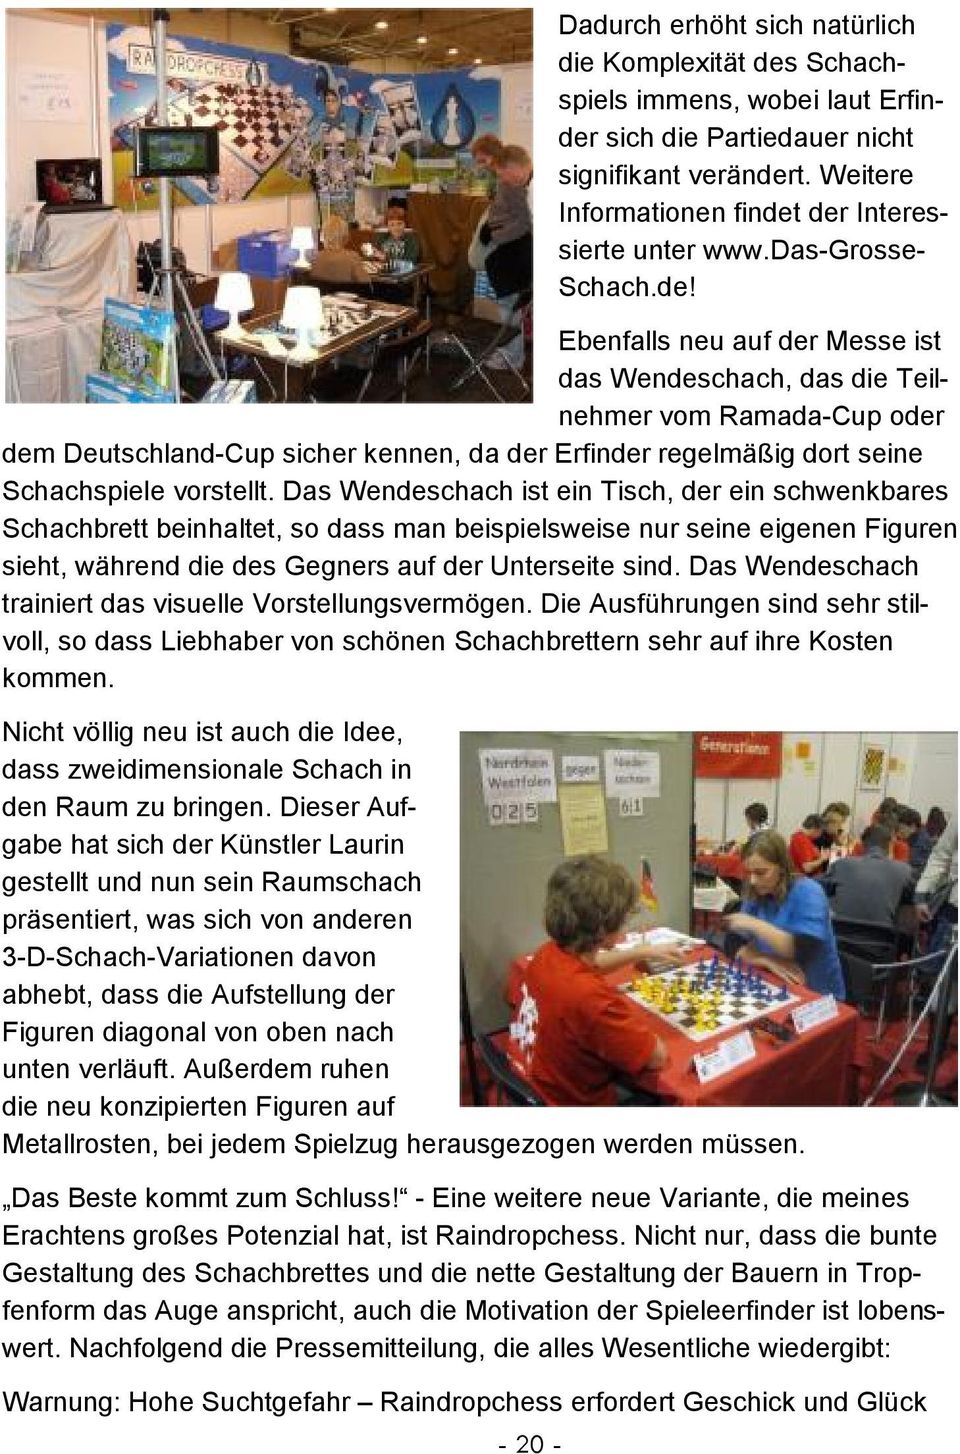 der Interessierte unter www.das-grosse- Schach.de! Ebenfalls neu auf der Messe ist das Wendeschach, das die Teilnehmer vom Ramada-Cup oder dem Deutschland-Cup sicher kennen, da der Erfinder regelmäßig dort seine Schachspiele vorstellt.